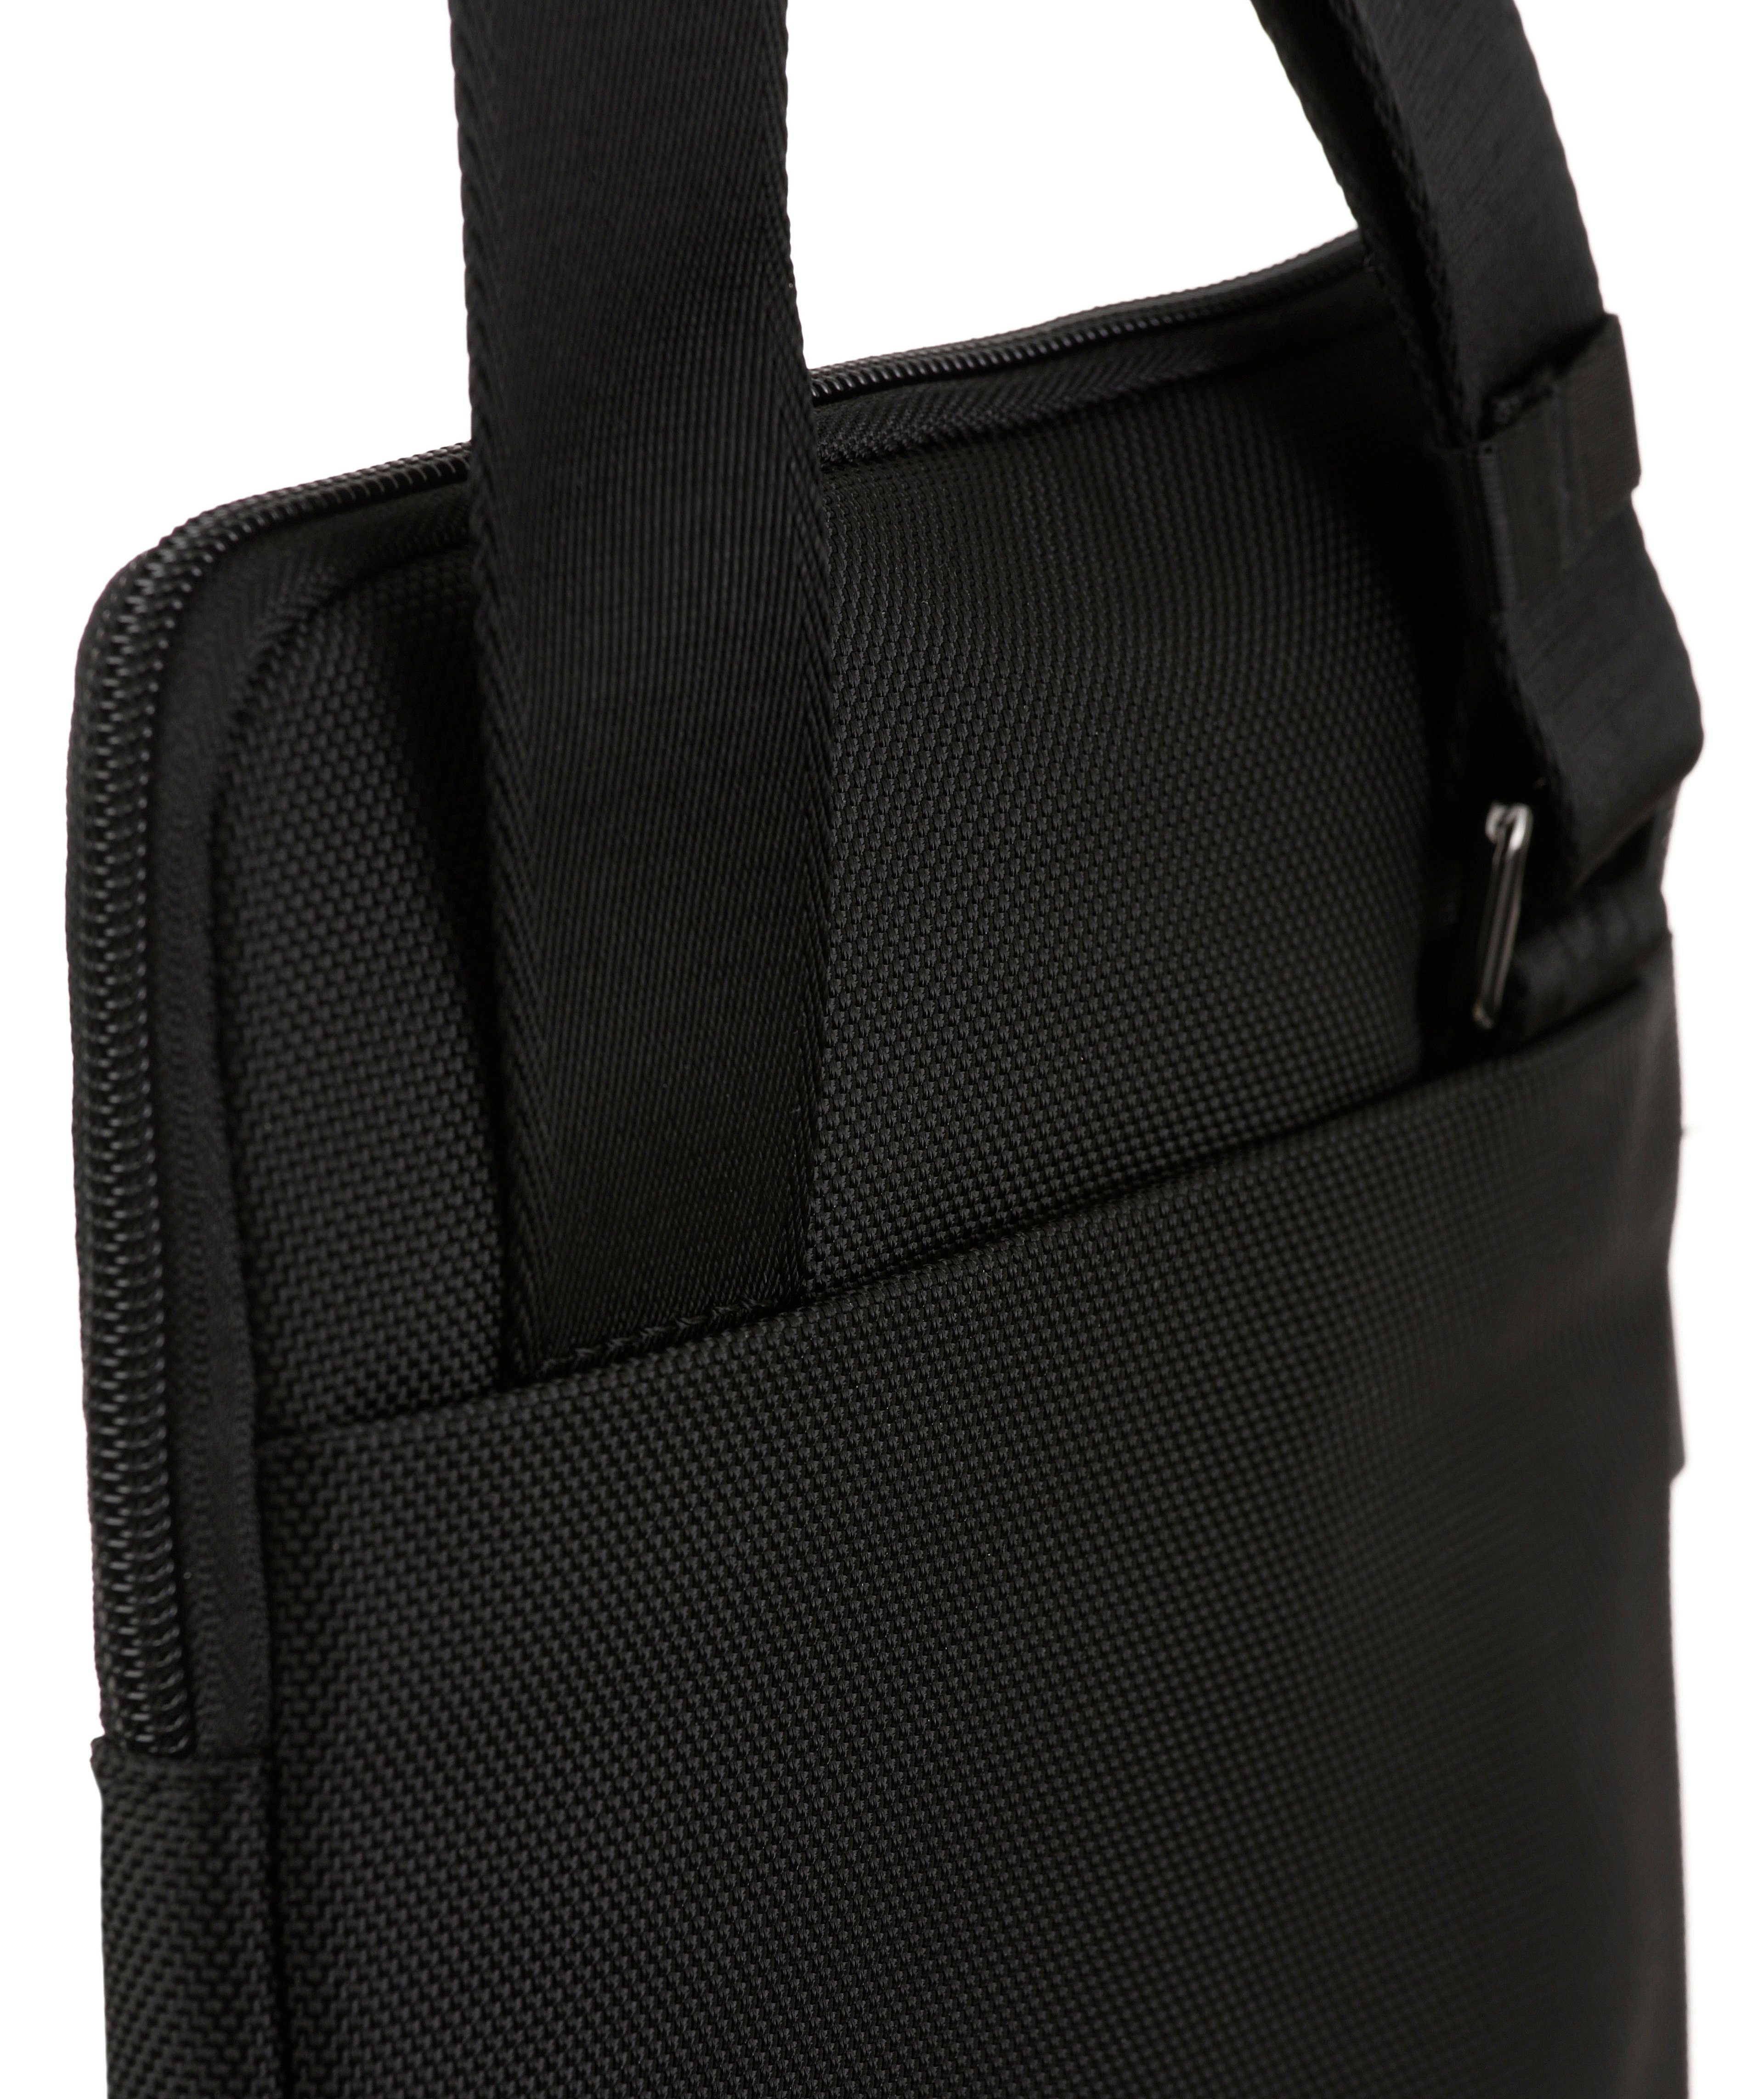 Joop Jeans Umhängetasche modica liam Stickerei shoulderbag Logo mit xsvz, schöner schwarz